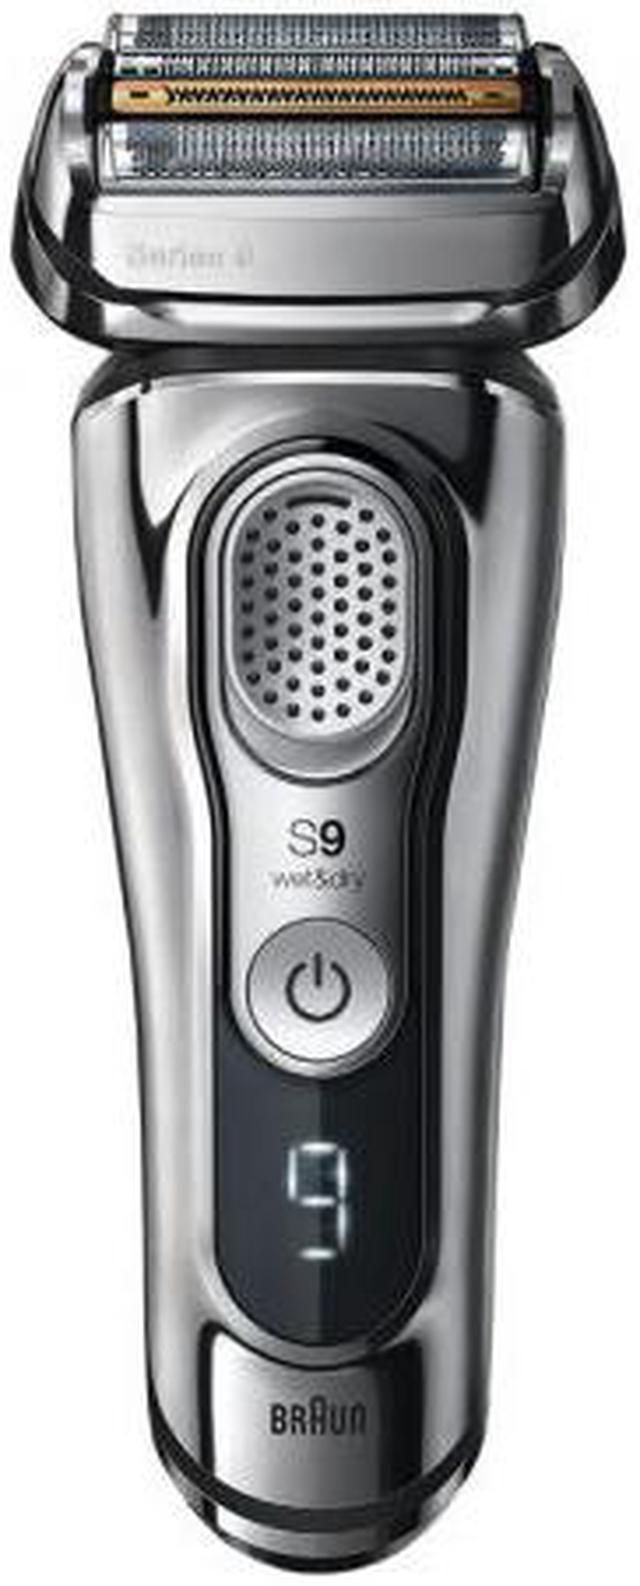 9390cc shaver Shavers & Trimmers For Men Newegg.com